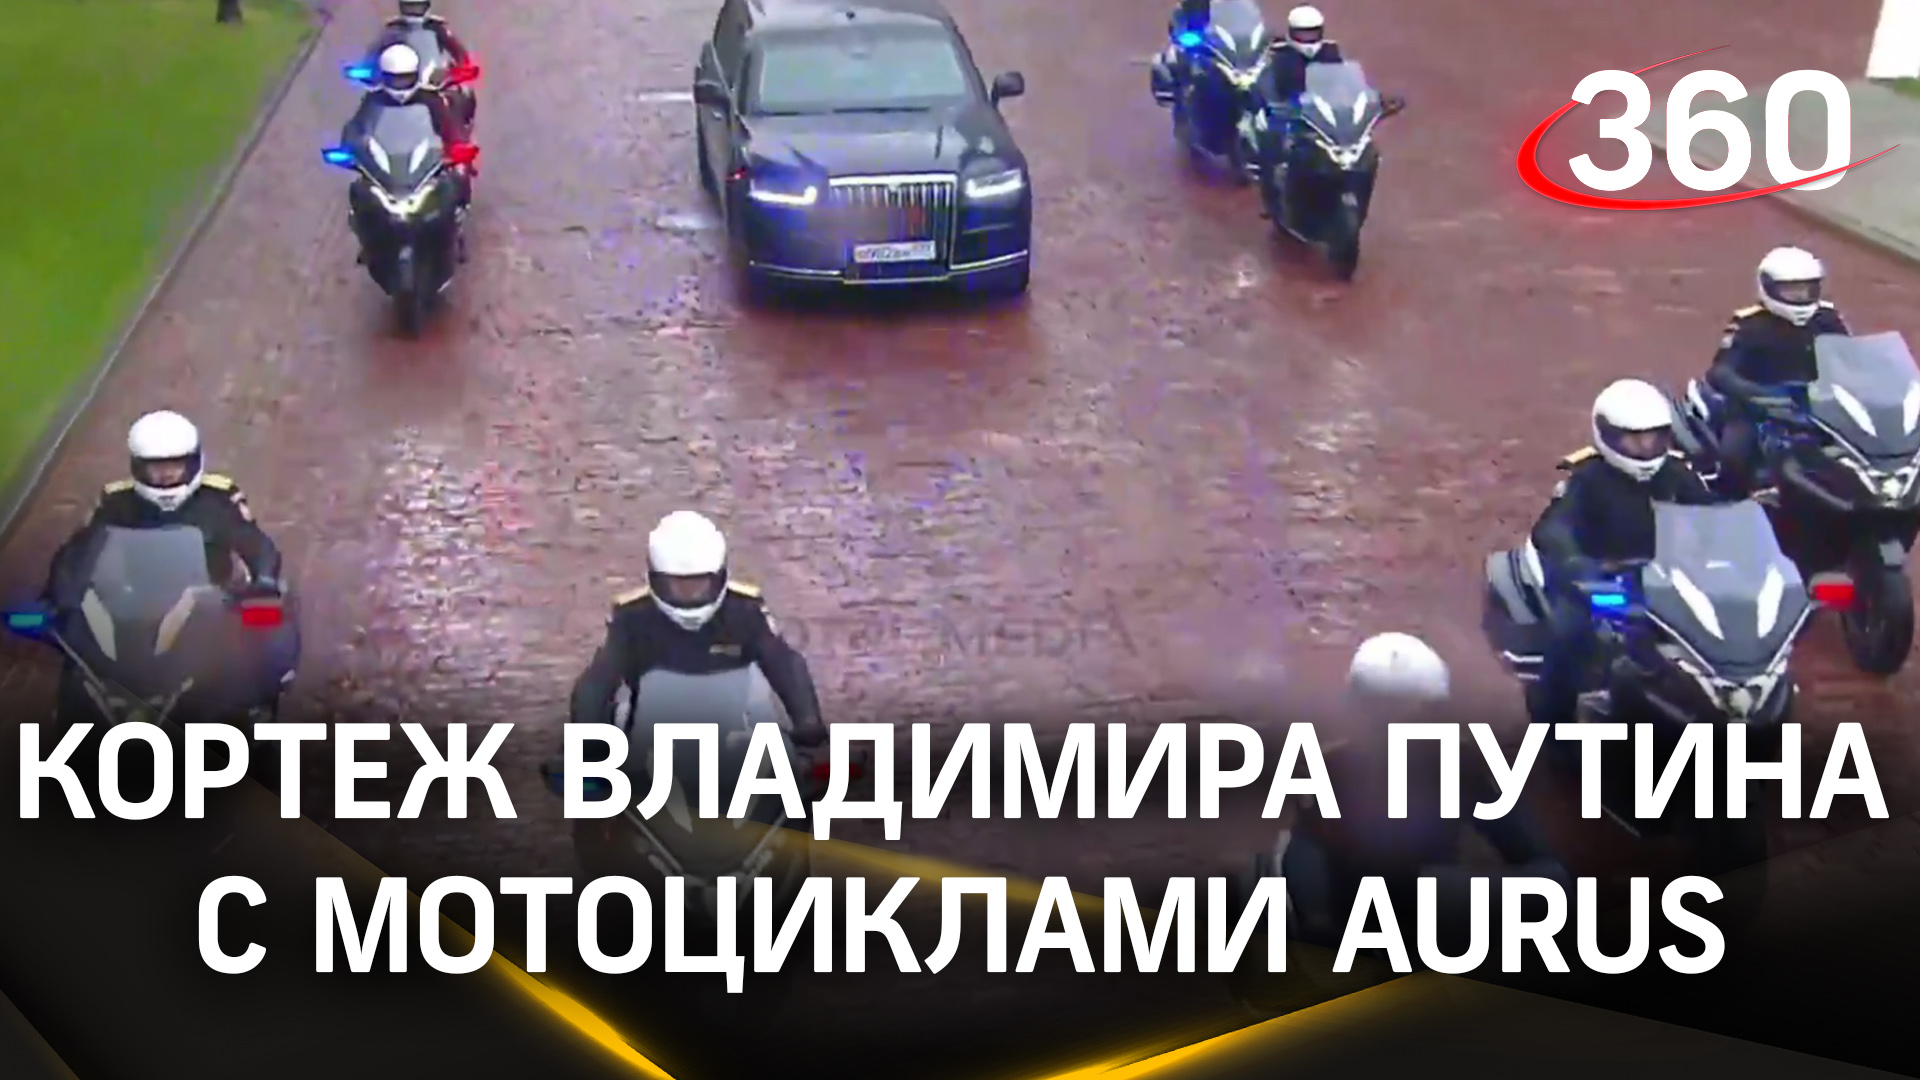 Мотоциклы Aurus впервые были использованы в президентском кортеже во время инаугурации Путина